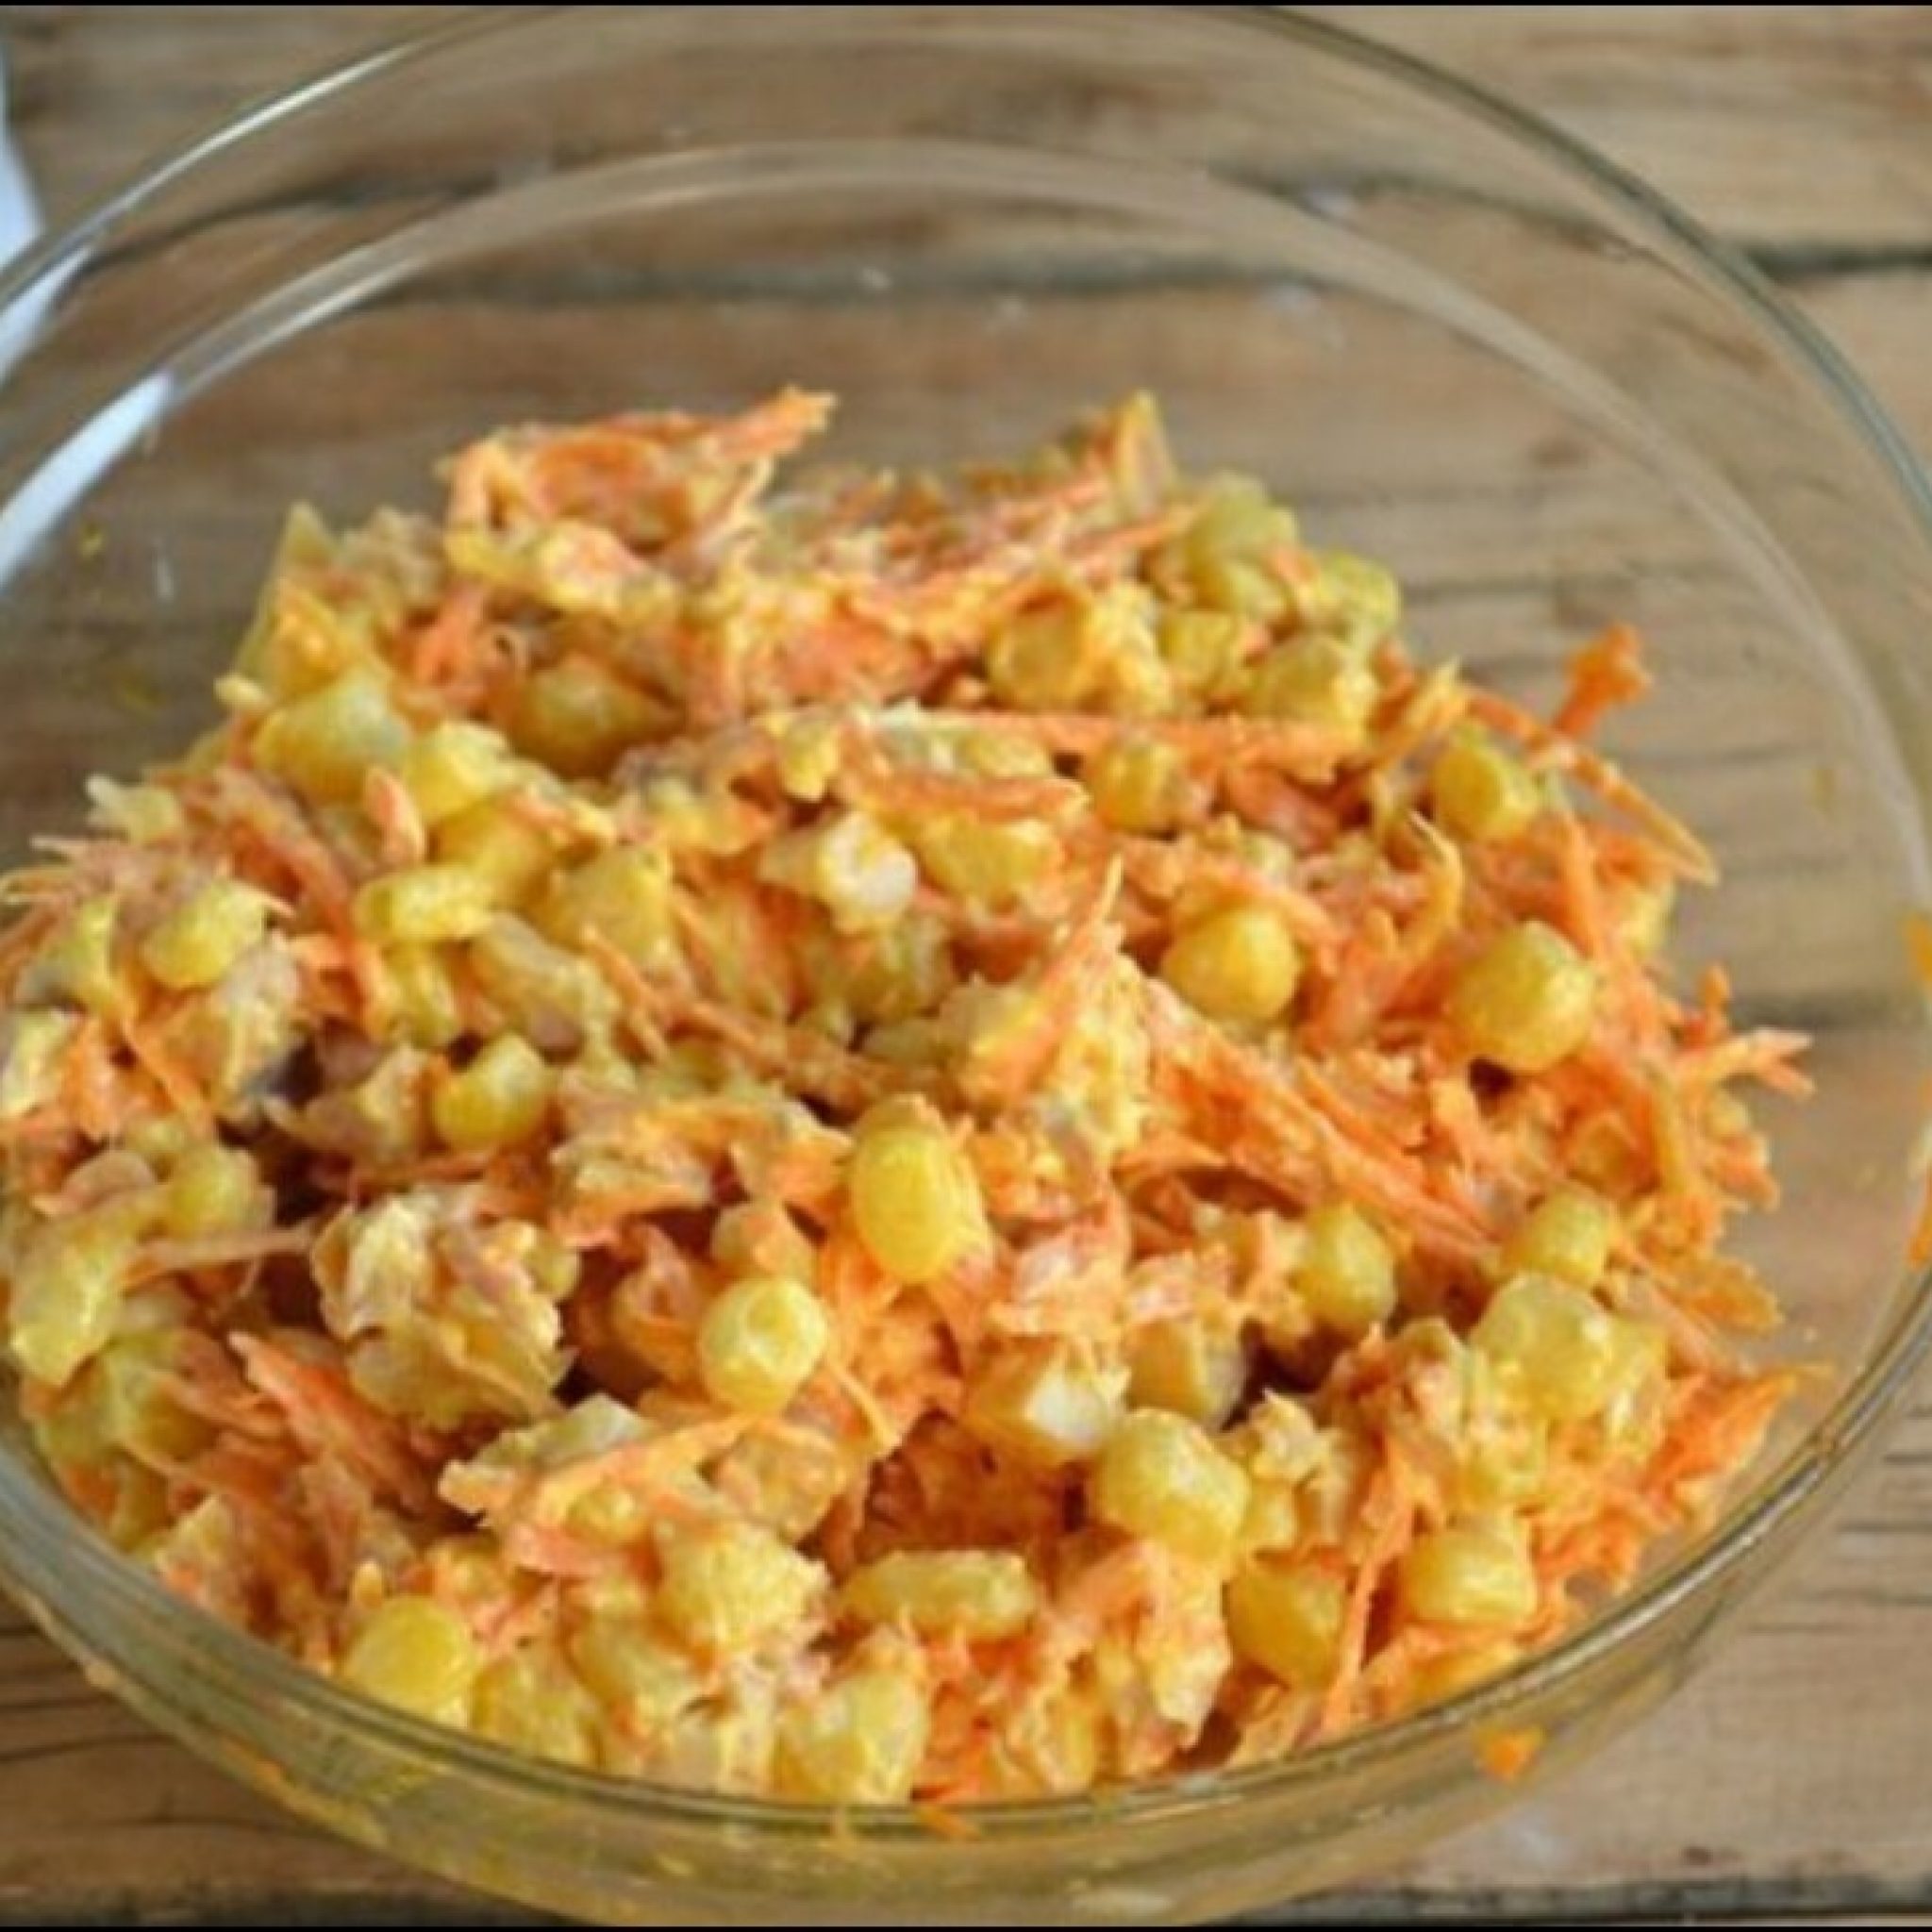 Вкусный салат из копченой курицы и корейской моркови рецепт с фото очень